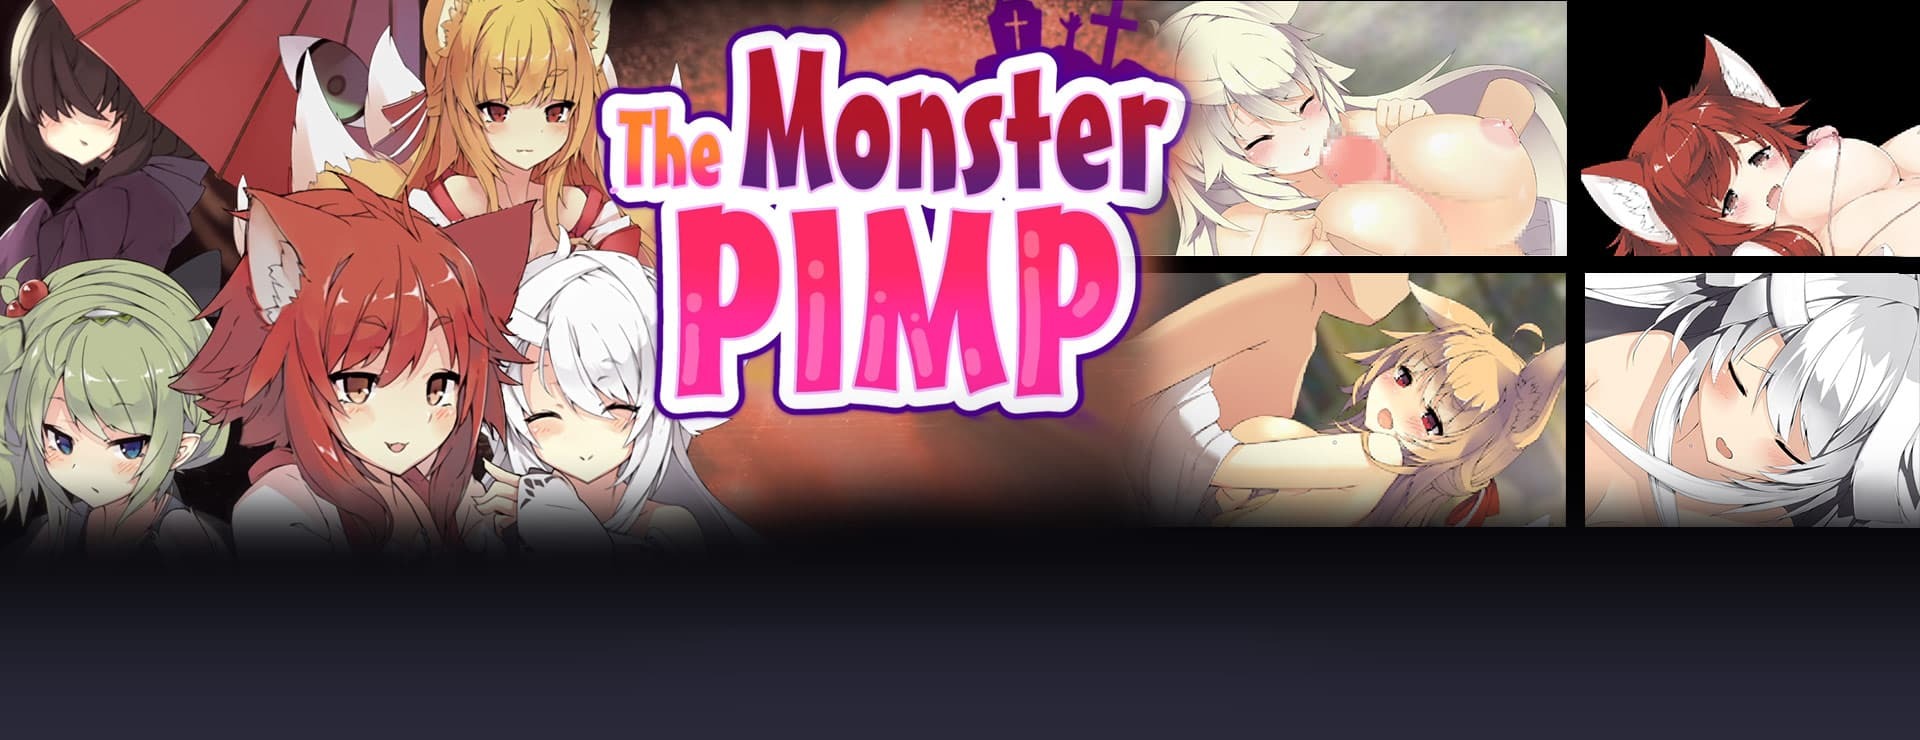 The Monster PIMP - RPG Spiel